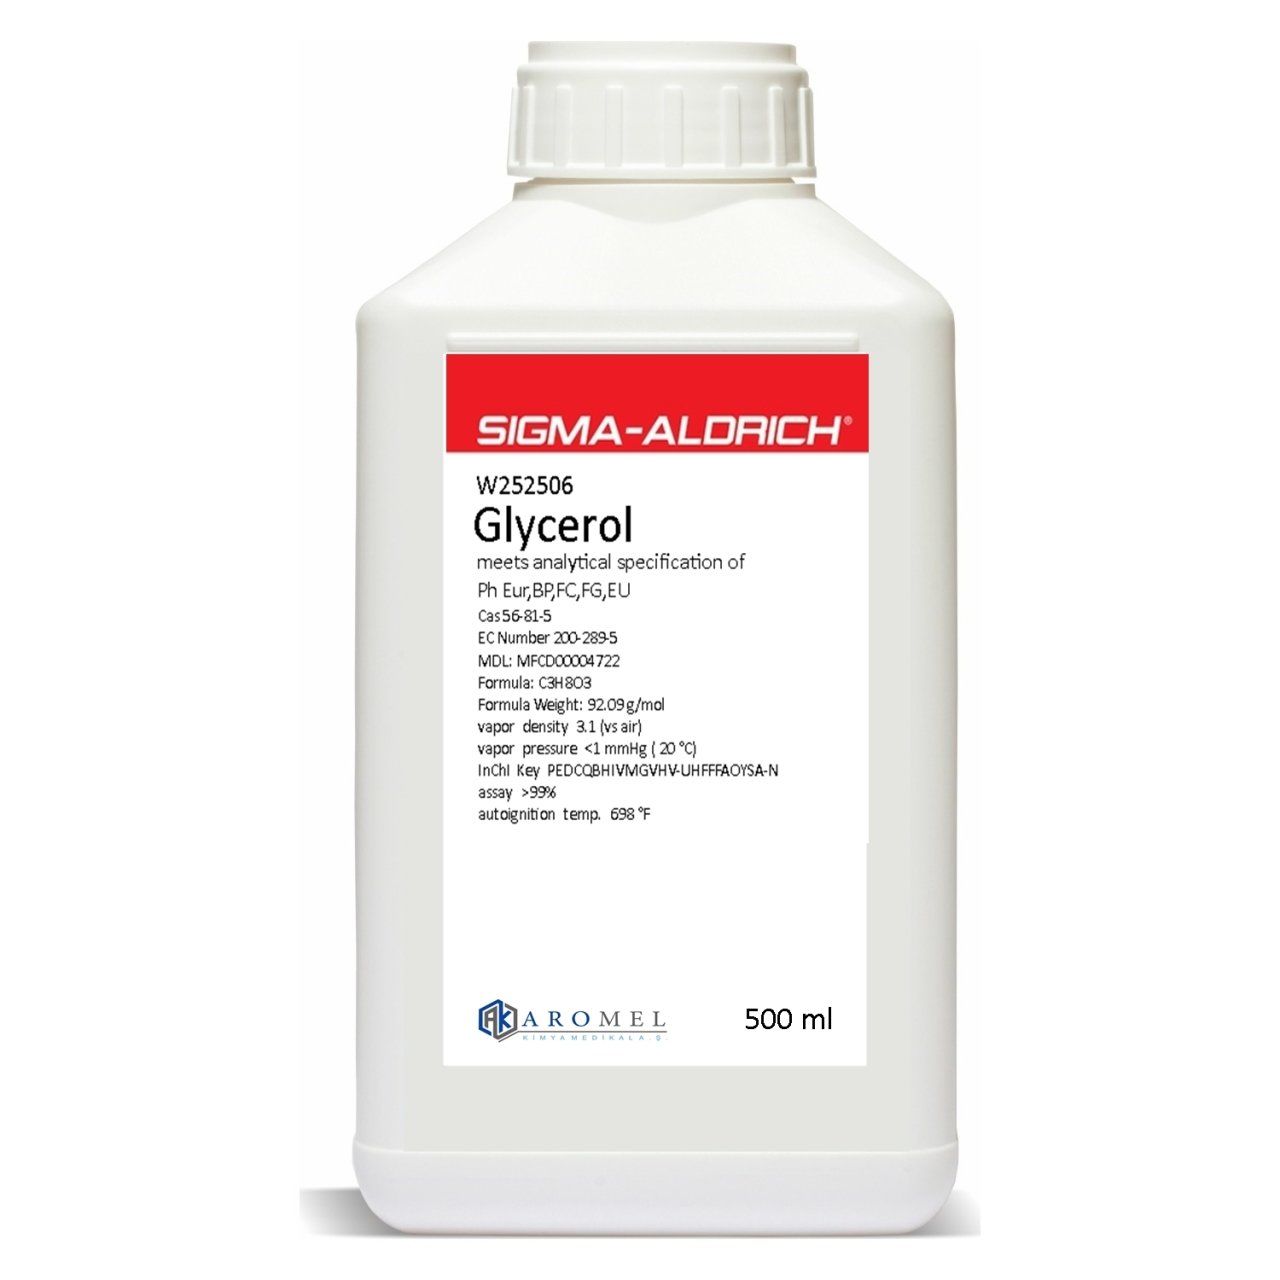 Sigma Aldrich Bitkisel Gliserin l 500 ml l Sigma W252506 Glycerol Vegetable